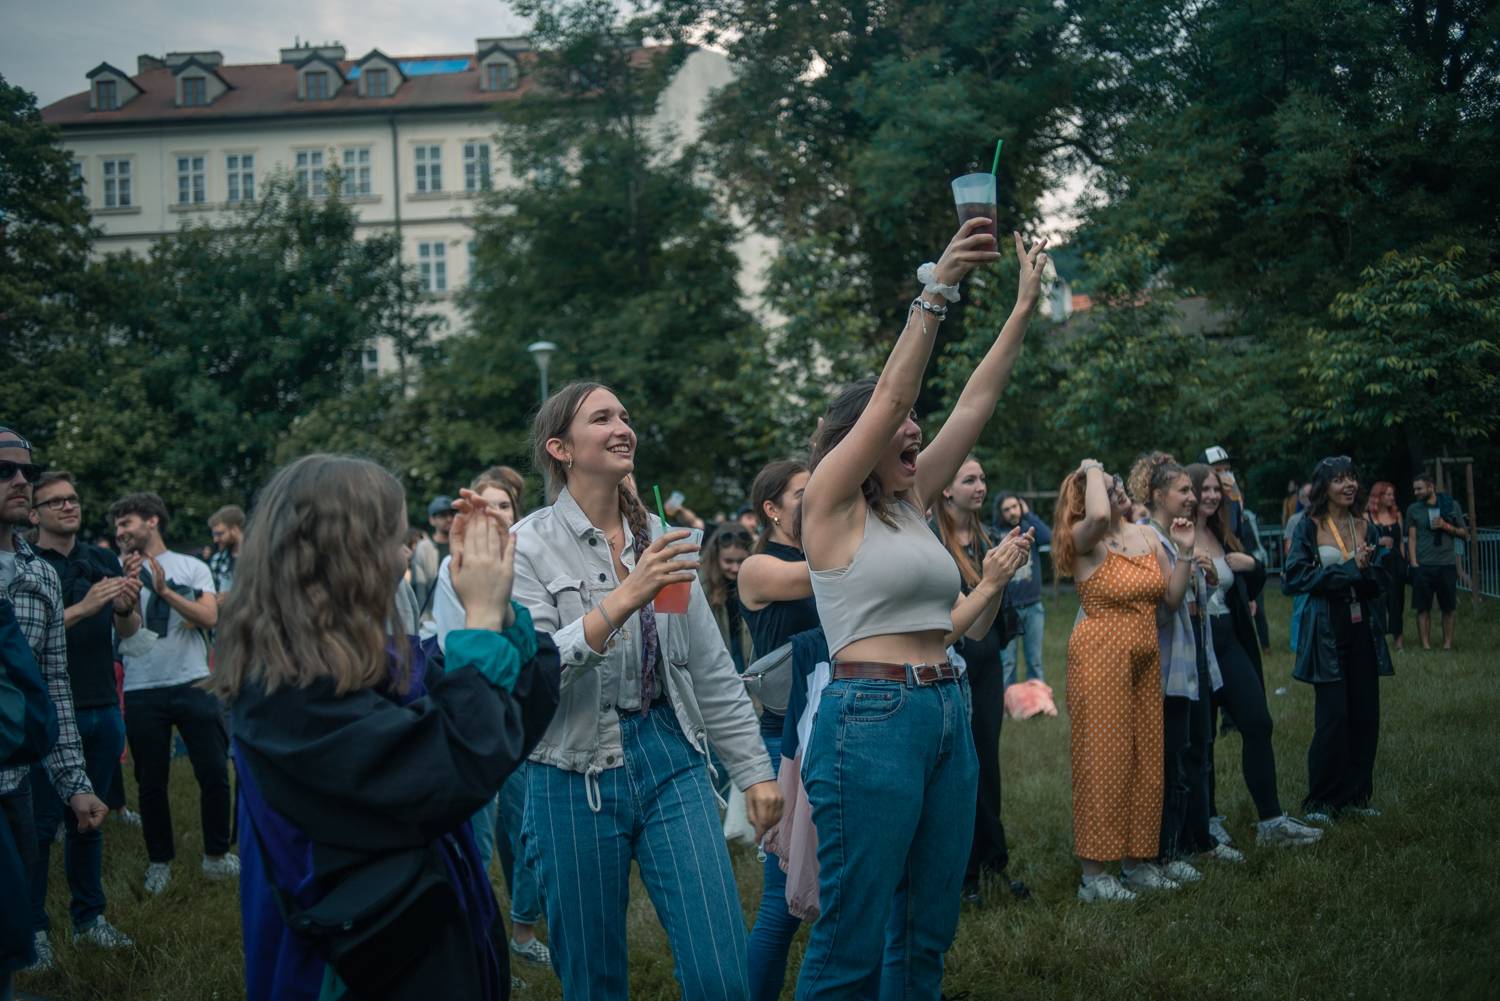 Festival United Islands of Prague odstartoval, přivítal několik německých umělců